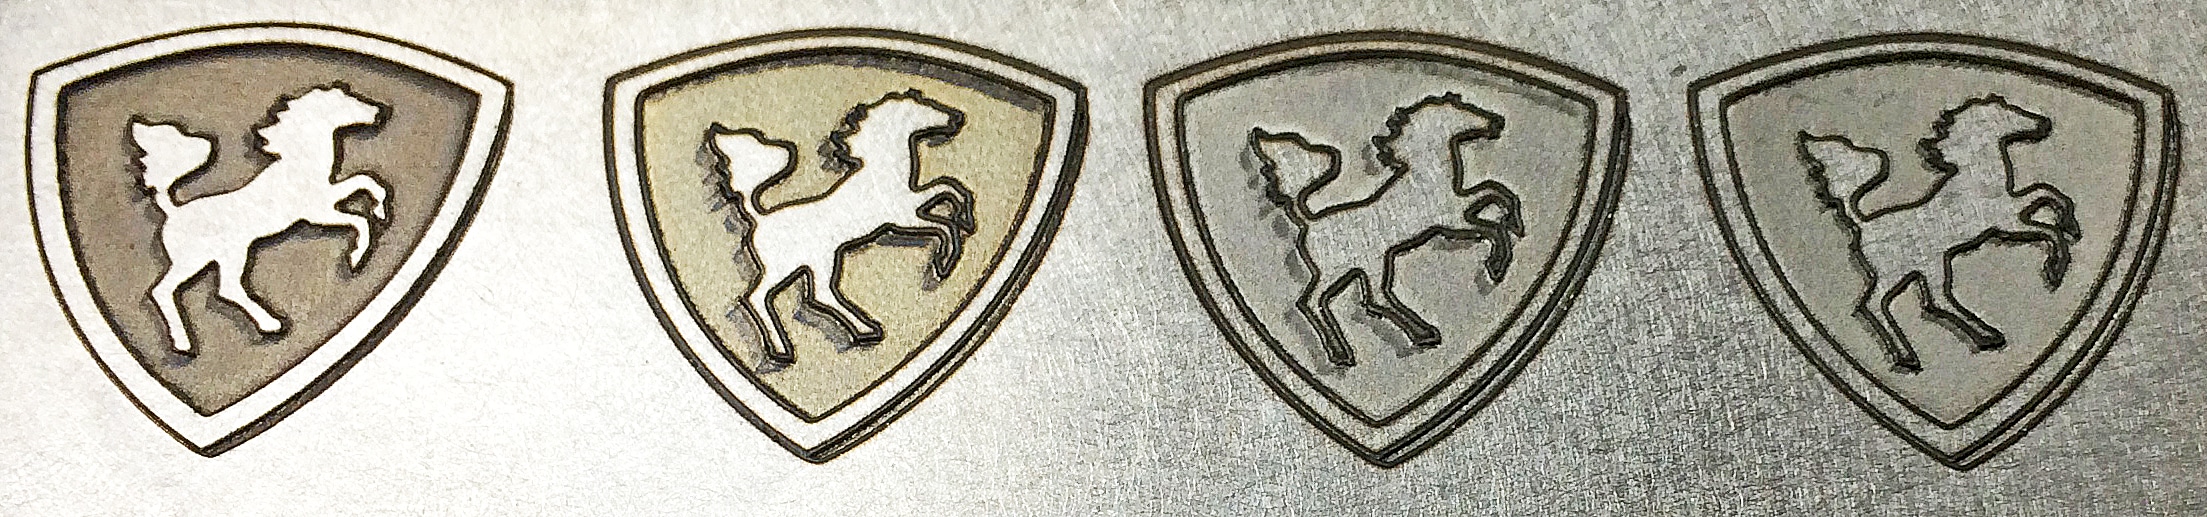 Deep Laser Engraving Logos on stainless steel